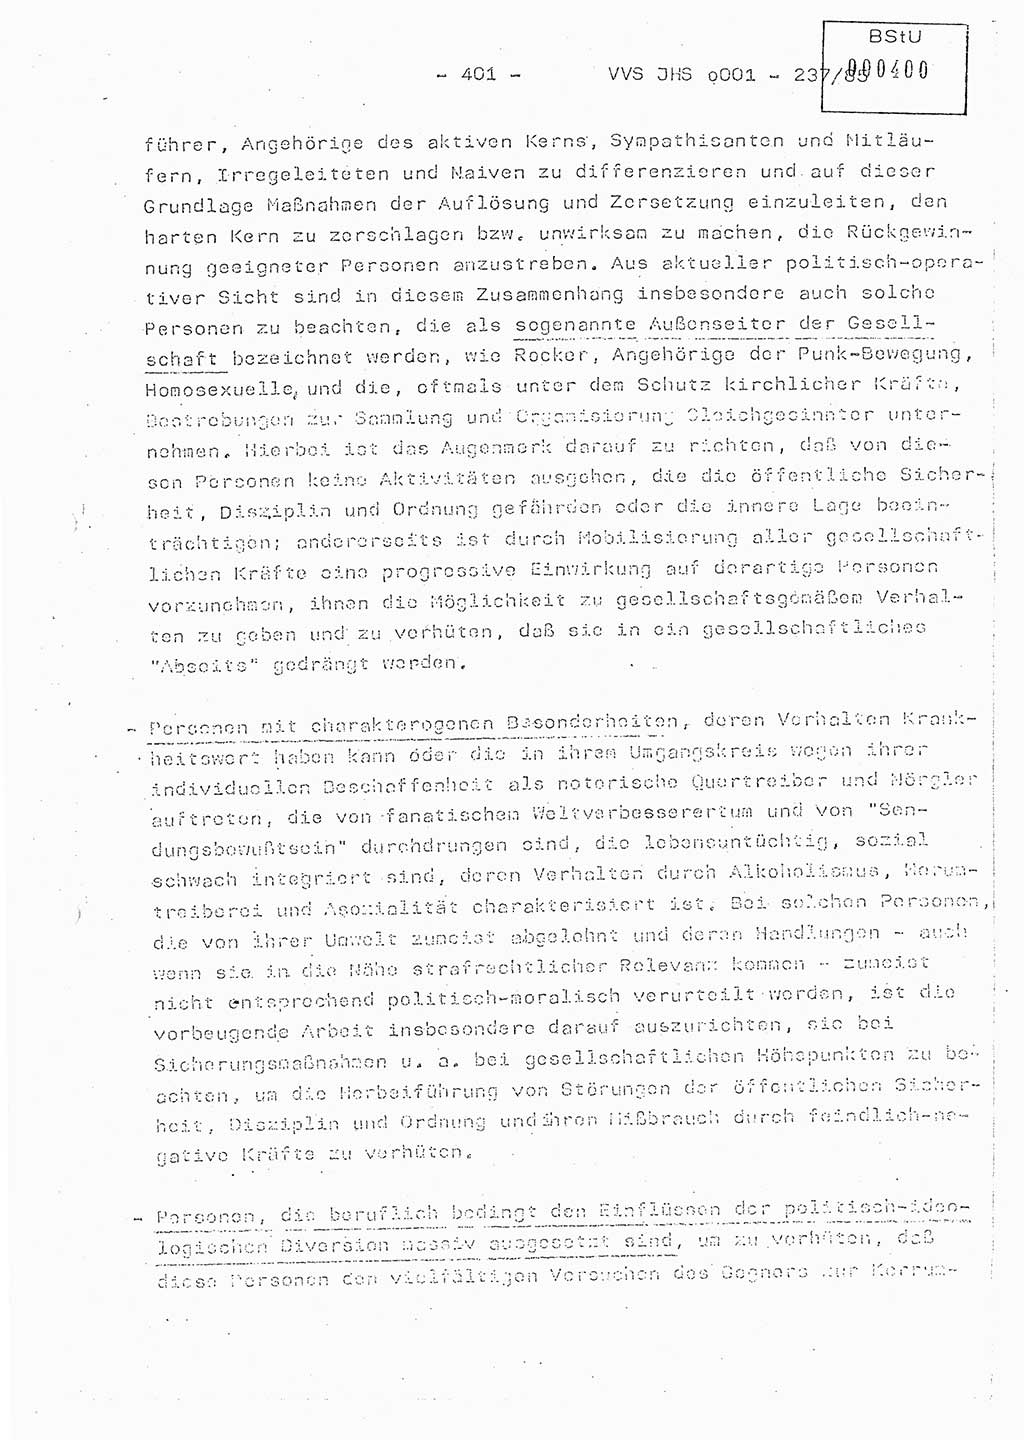 Dissertation Oberstleutnant Peter Jakulski (JHS), Oberstleutnat Christian Rudolph (HA Ⅸ), Major Horst Böttger (ZMD), Major Wolfgang Grüneberg (JHS), Major Albert Meutsch (JHS), Ministerium für Staatssicherheit (MfS) [Deutsche Demokratische Republik (DDR)], Juristische Hochschule (JHS), Vertrauliche Verschlußsache (VVS) o001-237/85, Potsdam 1985, Seite 401 (Diss. MfS DDR JHS VVS o001-237/85 1985, S. 401)